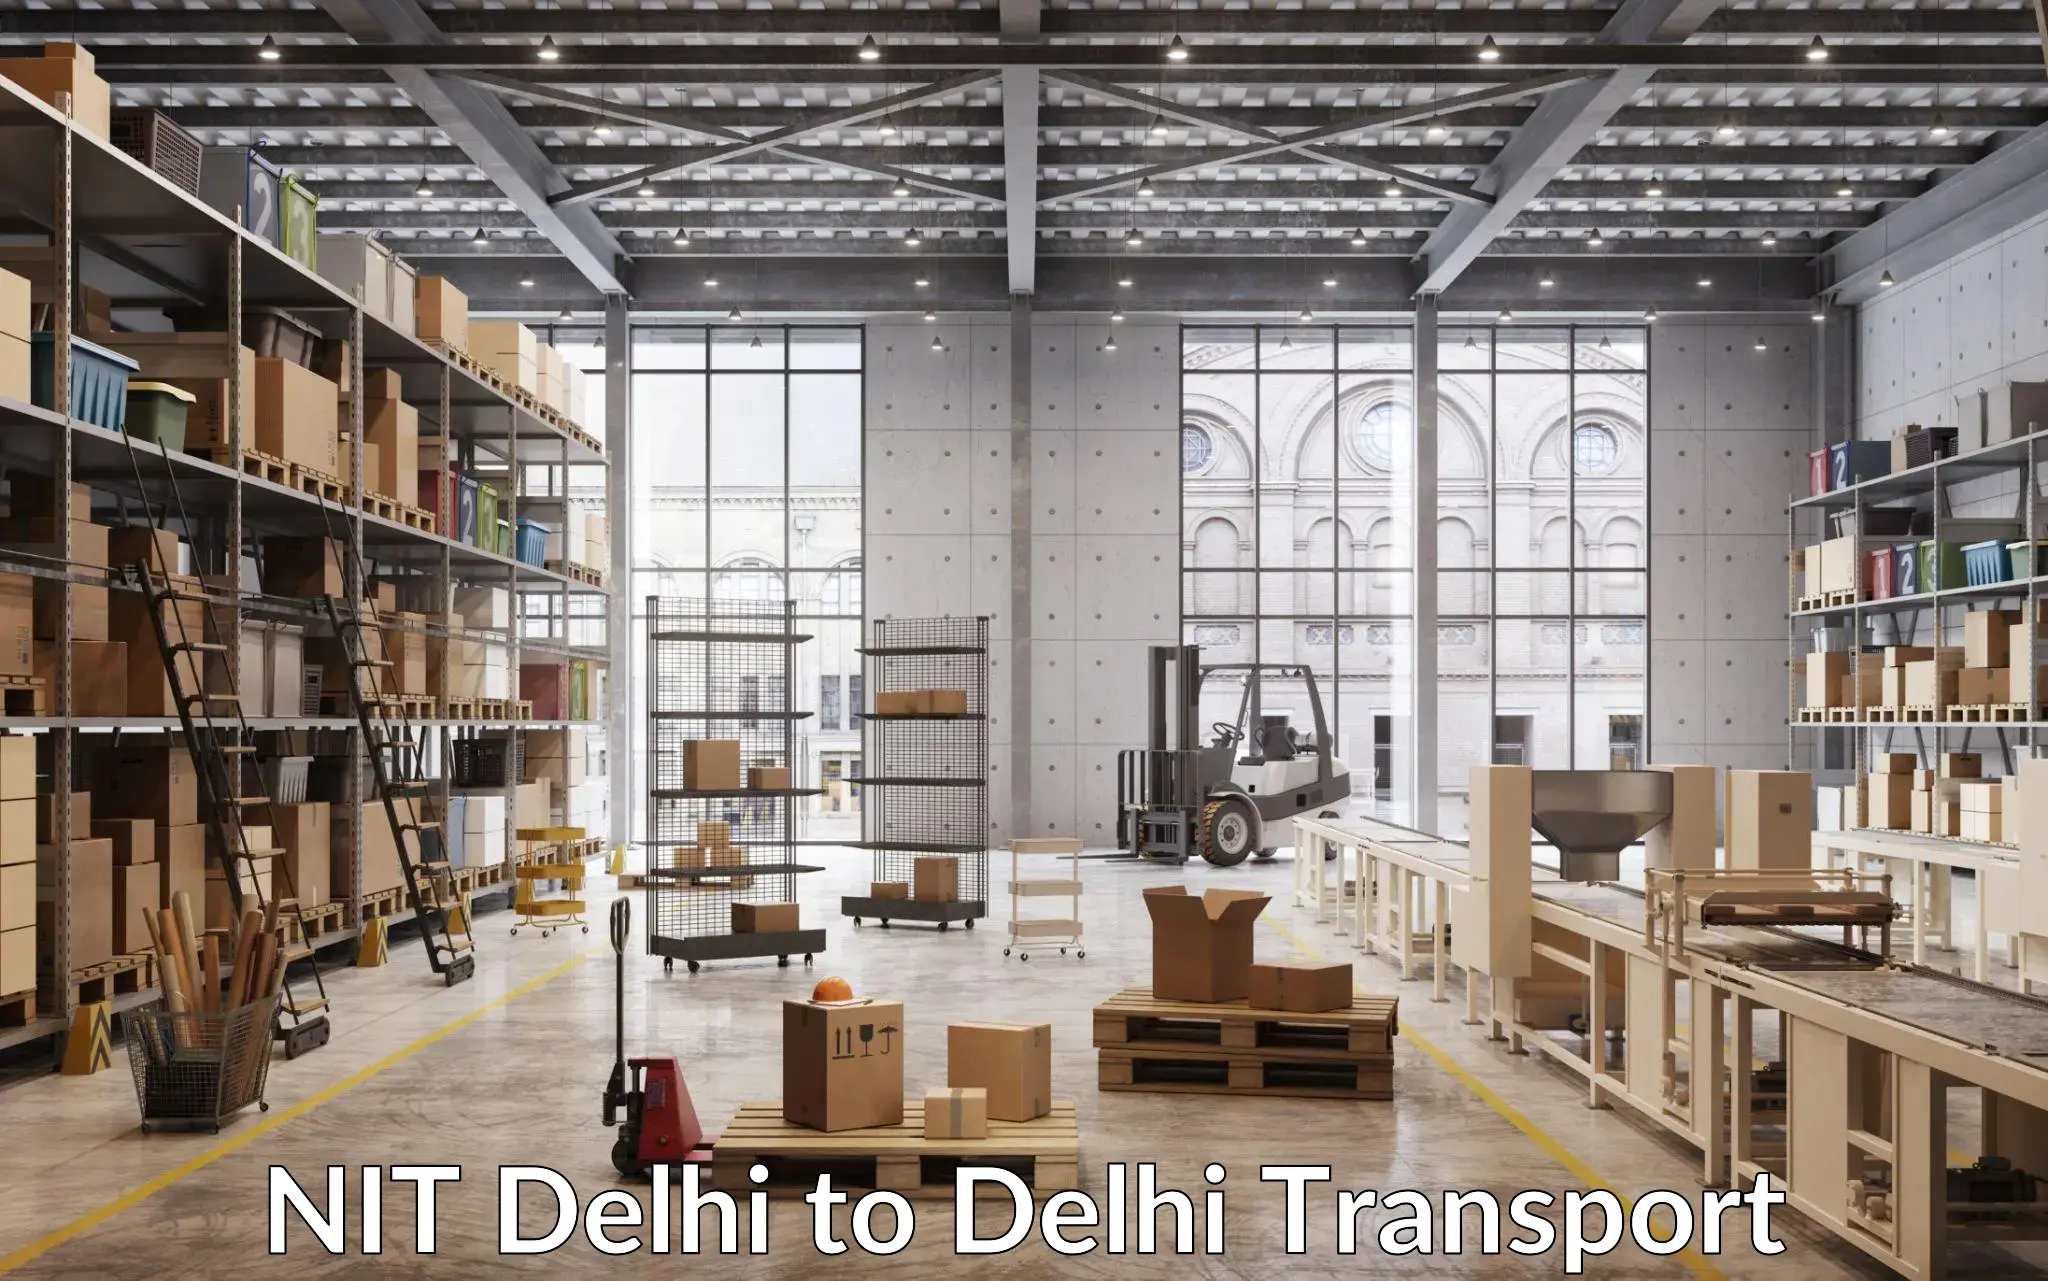 Lorry transport service NIT Delhi to East Delhi